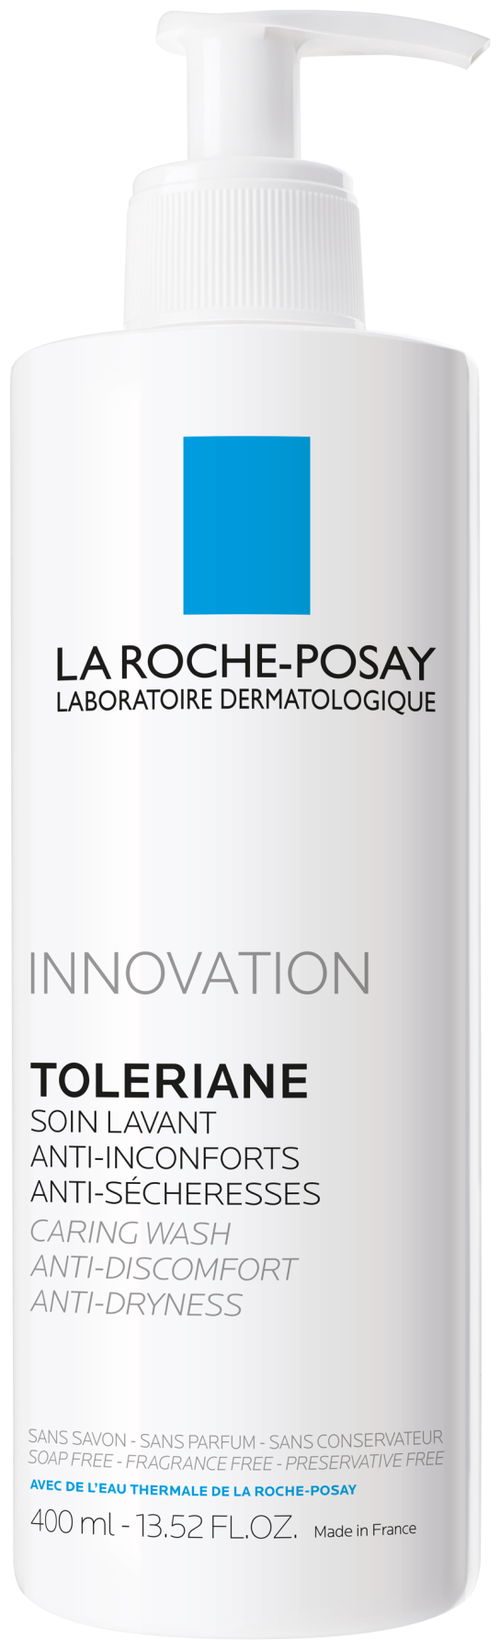 La Roche-Posay гель-уход очищающий для умывания Toleriane, 400 мл, 460 г